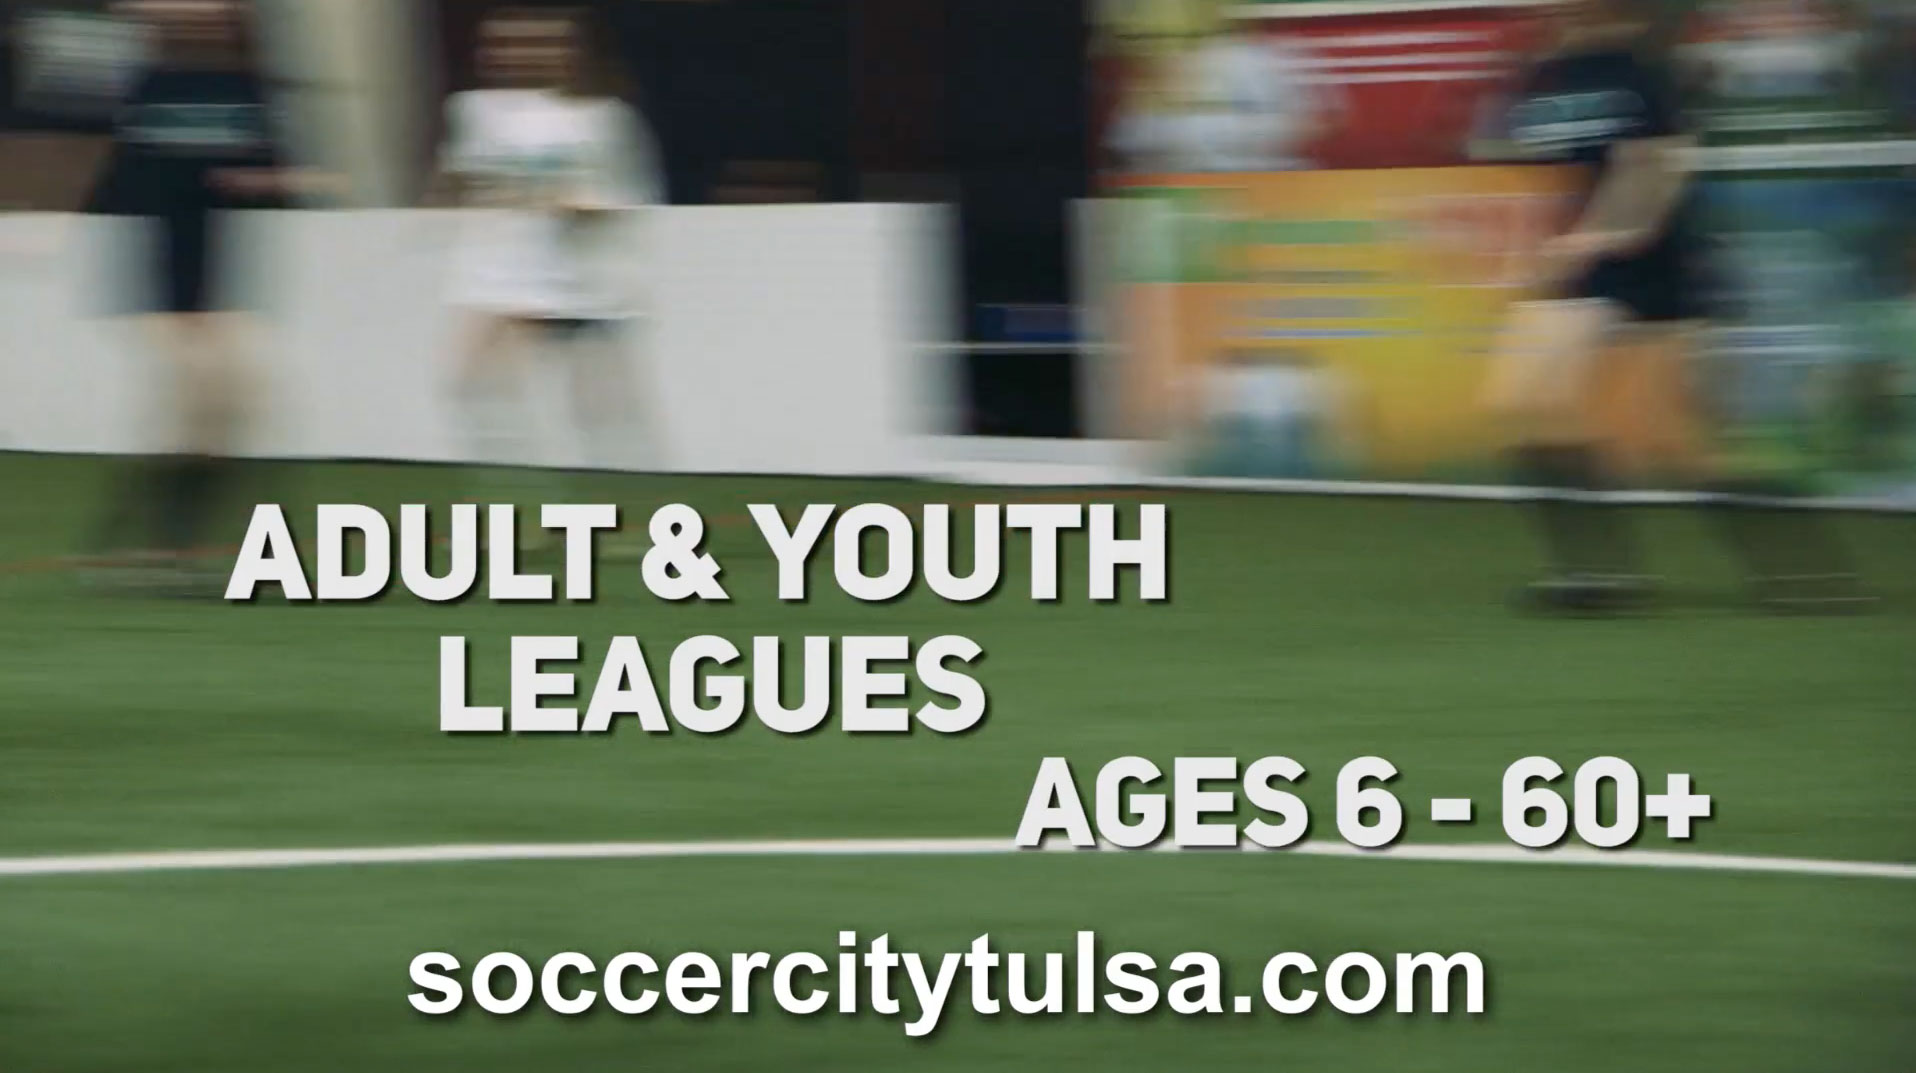 SoccerCity Tulsa image